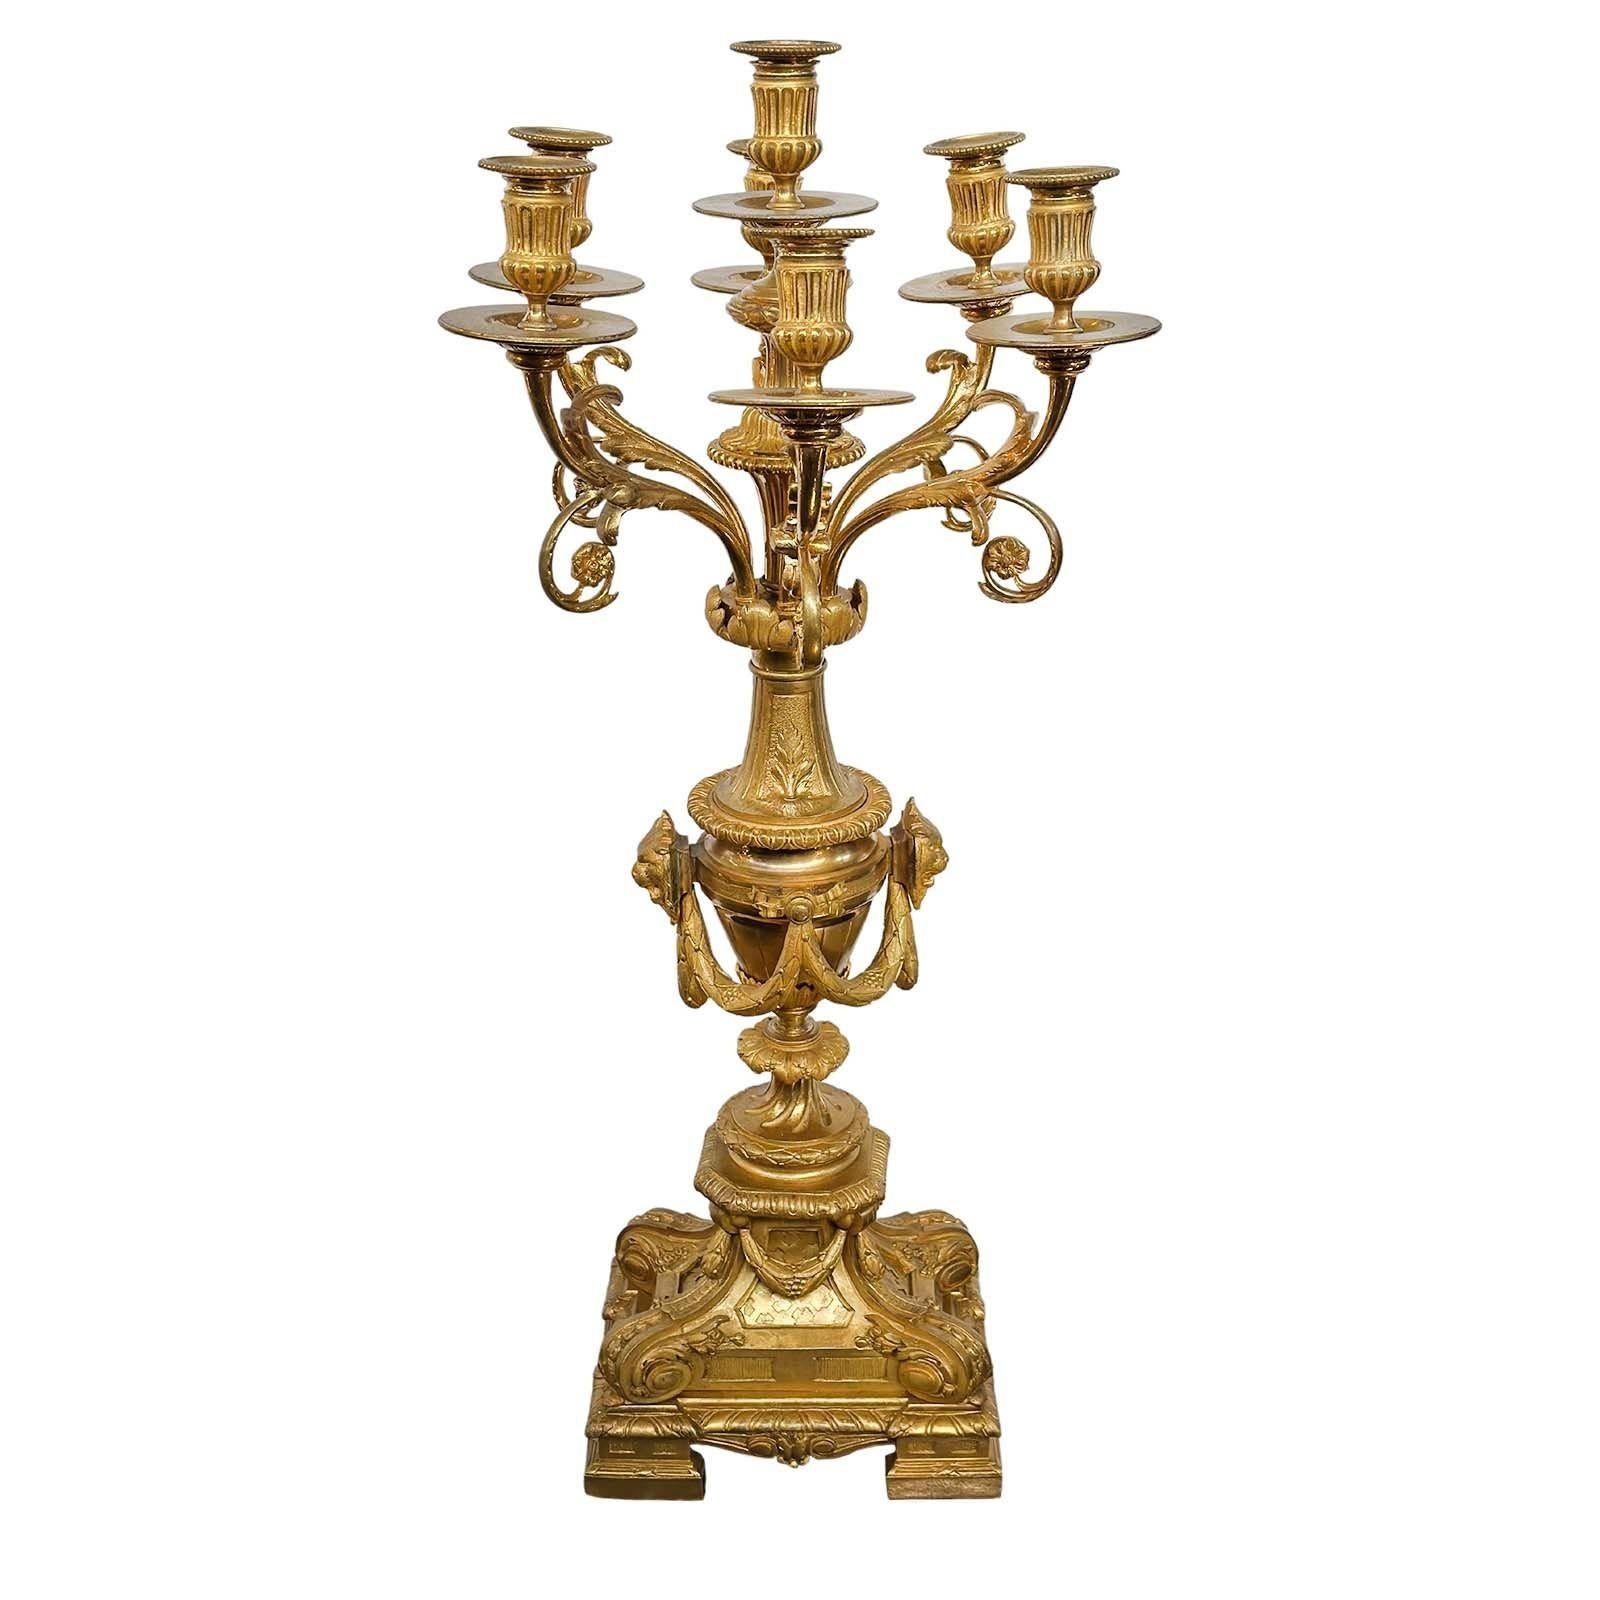 Paire de gracieux candélabres D'ore en bronze doré. Fabriqué en France à la fin du 19e siècle. 
Ces candélabres présentent une délicieuse combinaison de bronze et de plaqué or, conférant une touche de sophistication intemporelle à n'importe quel